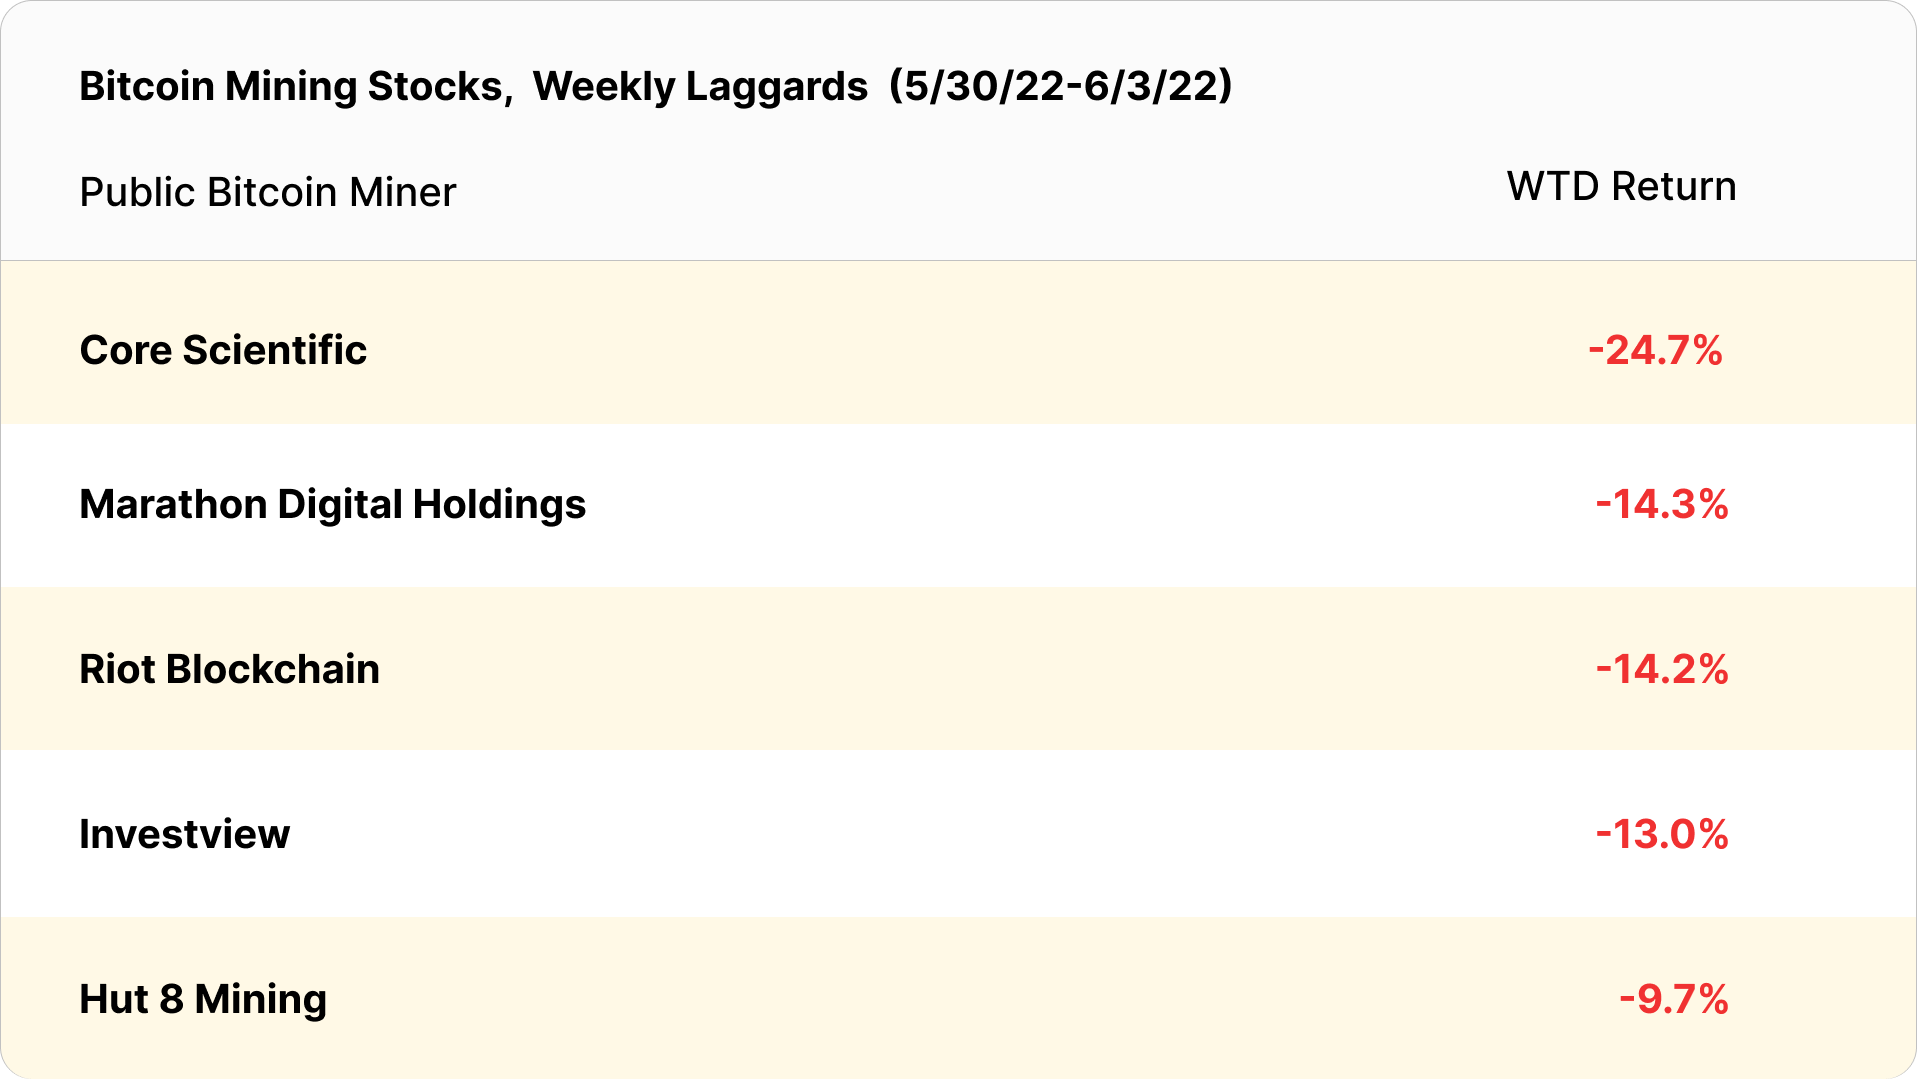 Bitcoin mining stocks, weekly losses (May 30 - June 3, 2022)